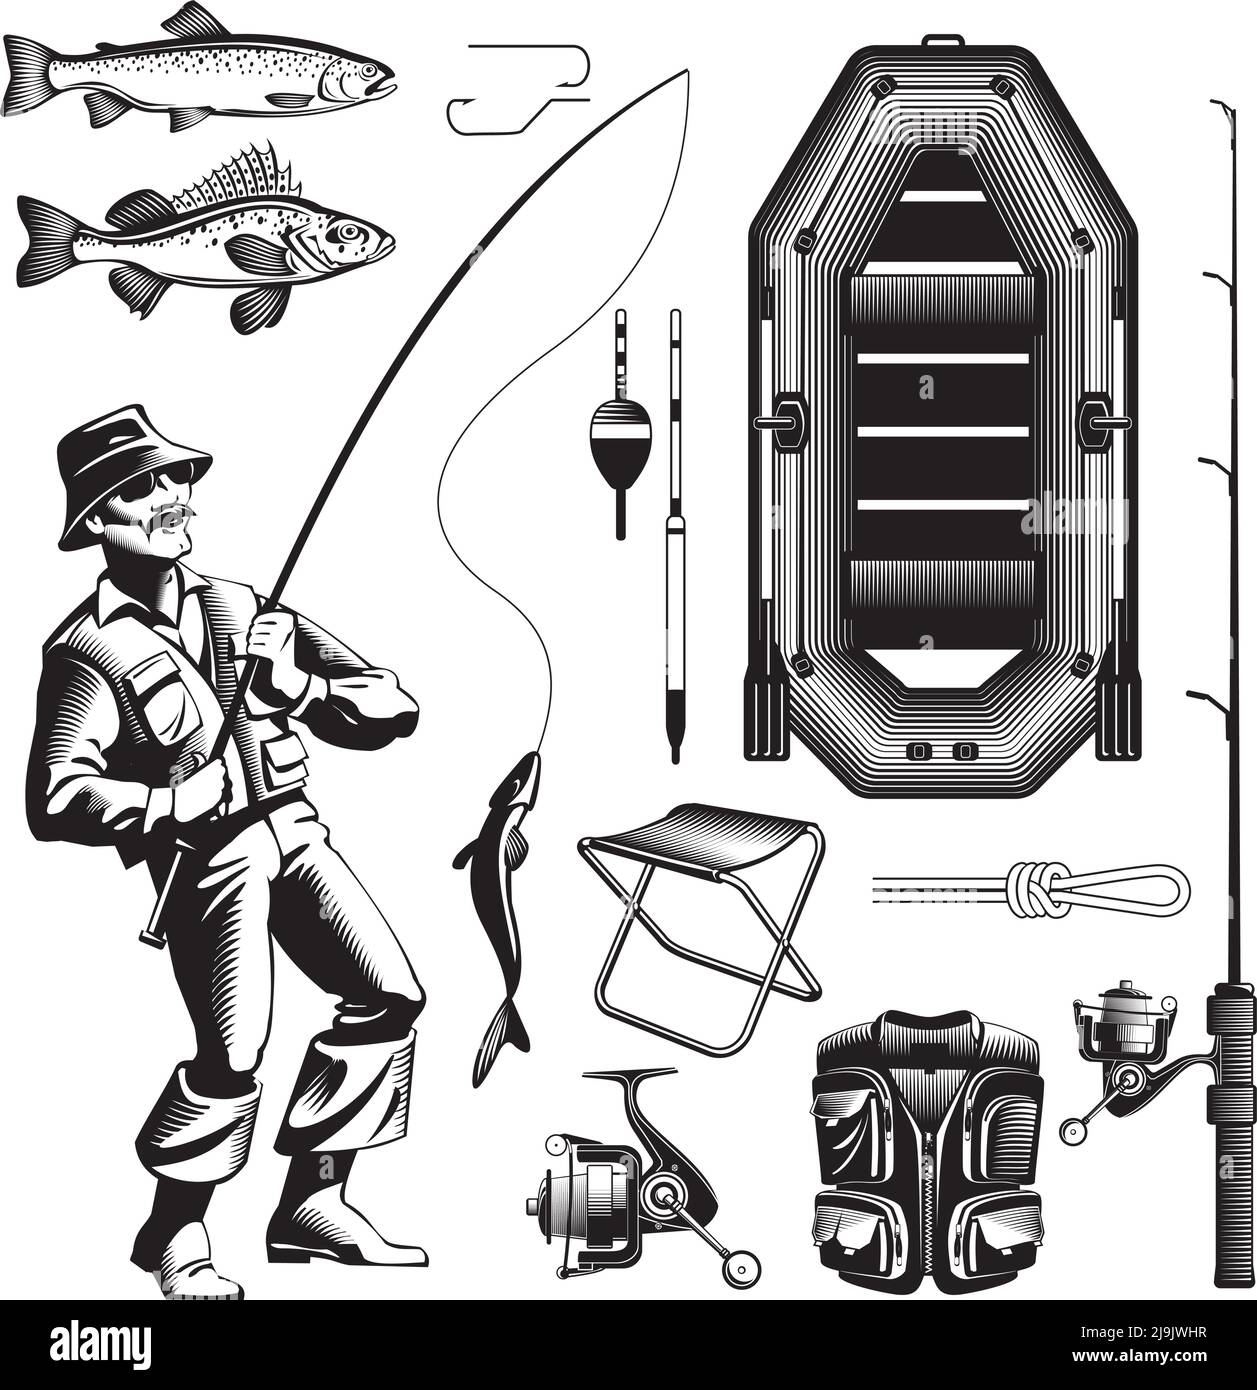 Décor vintage de pêche isolé icône avec pêcheur de style ancien s'attaquer à l'illustration du sanglier pneumatique et d'autres vecteurs d'engrenage Illustration de Vecteur